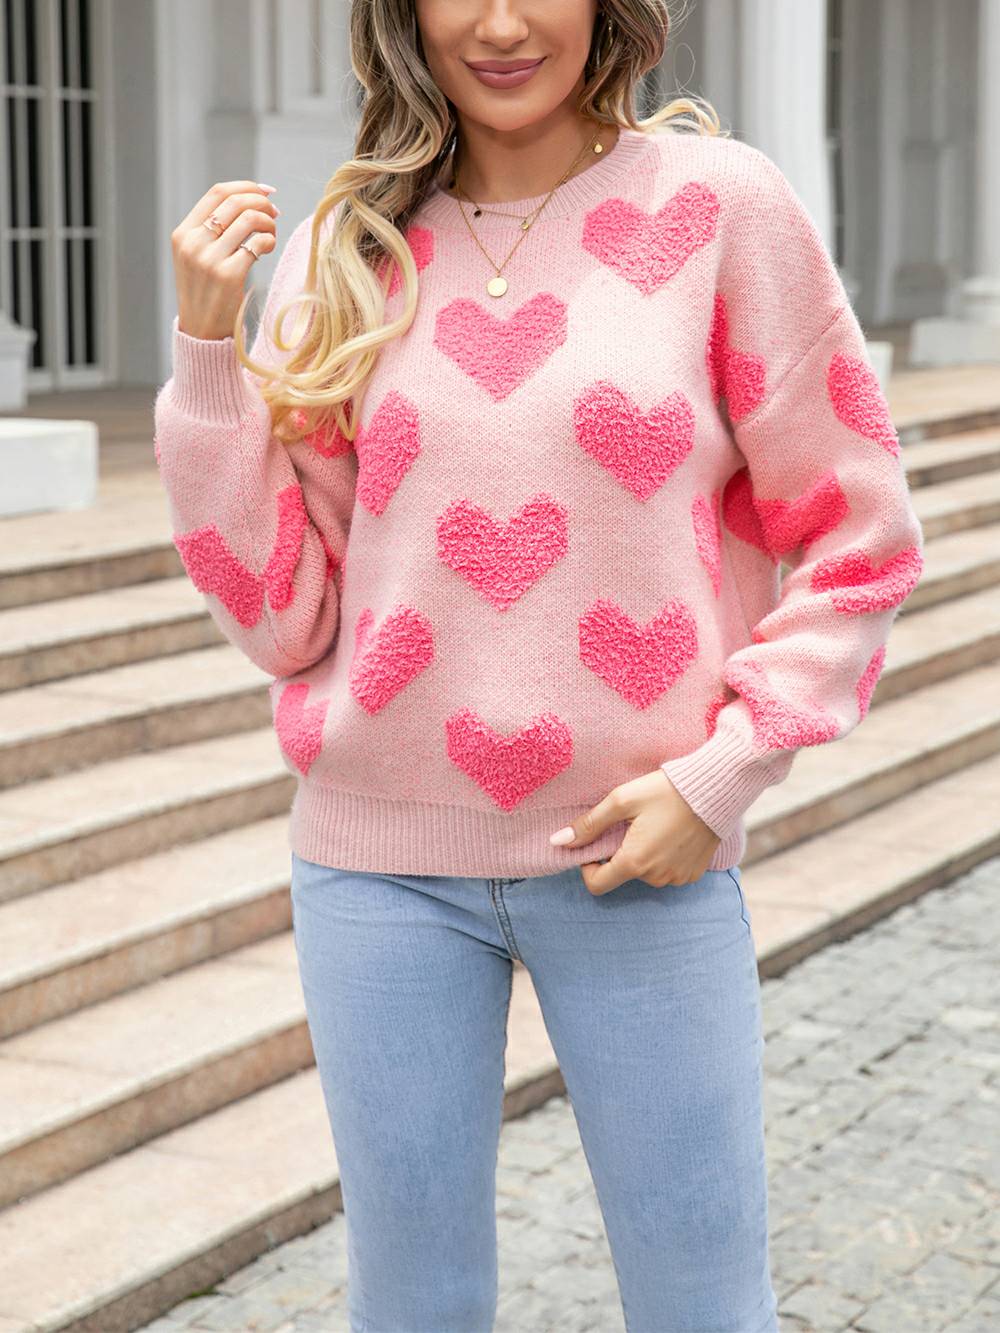 Tiny Hearts of Love 니트 풀오버 스웨터